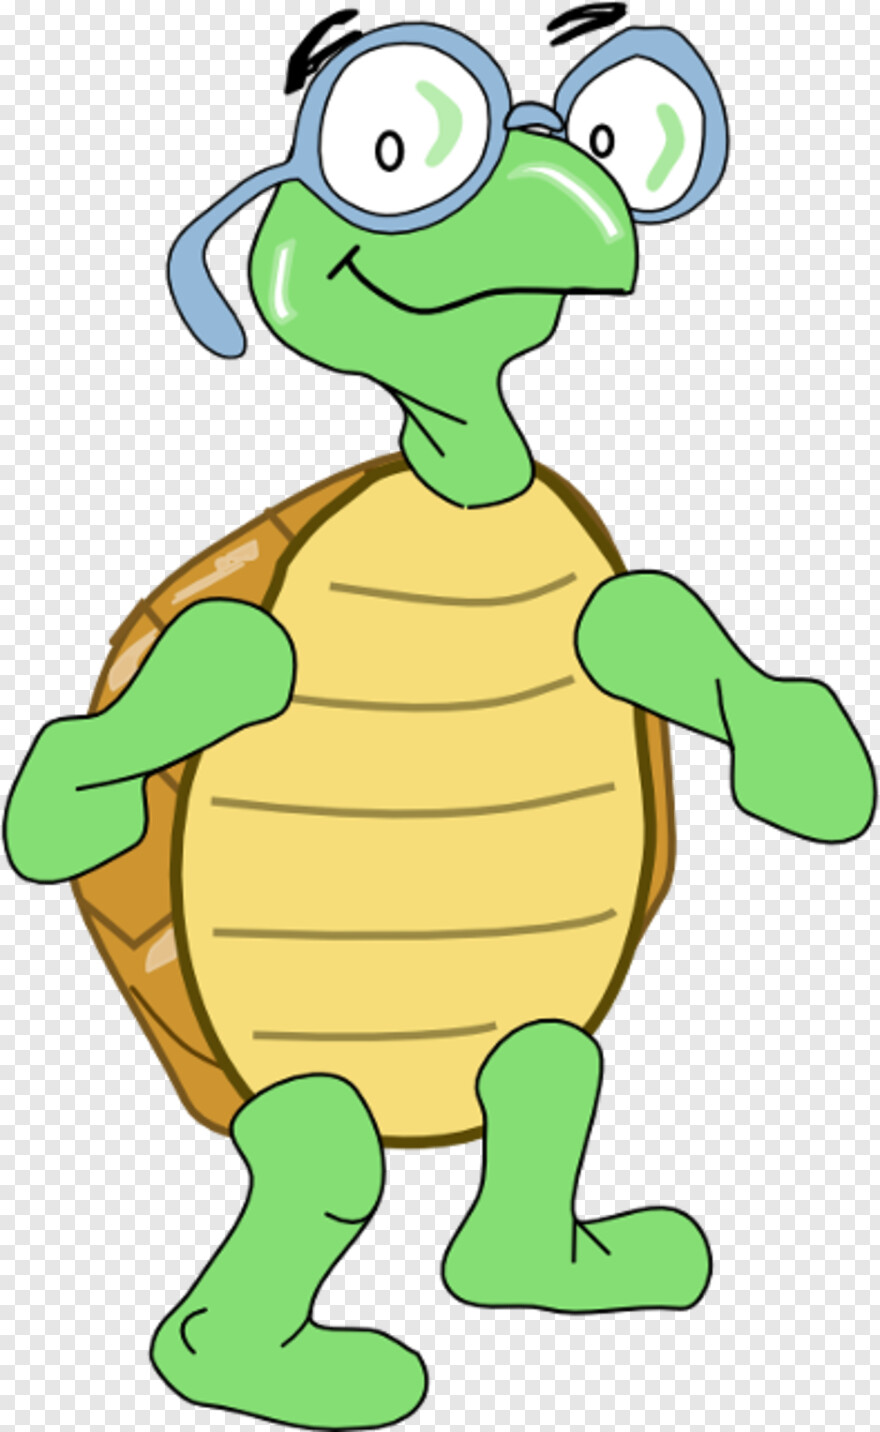  Turtle Silhouette, Turtle, Turtle Shell, Sea Turtle, Turtle Clipart, Uruguay Flag